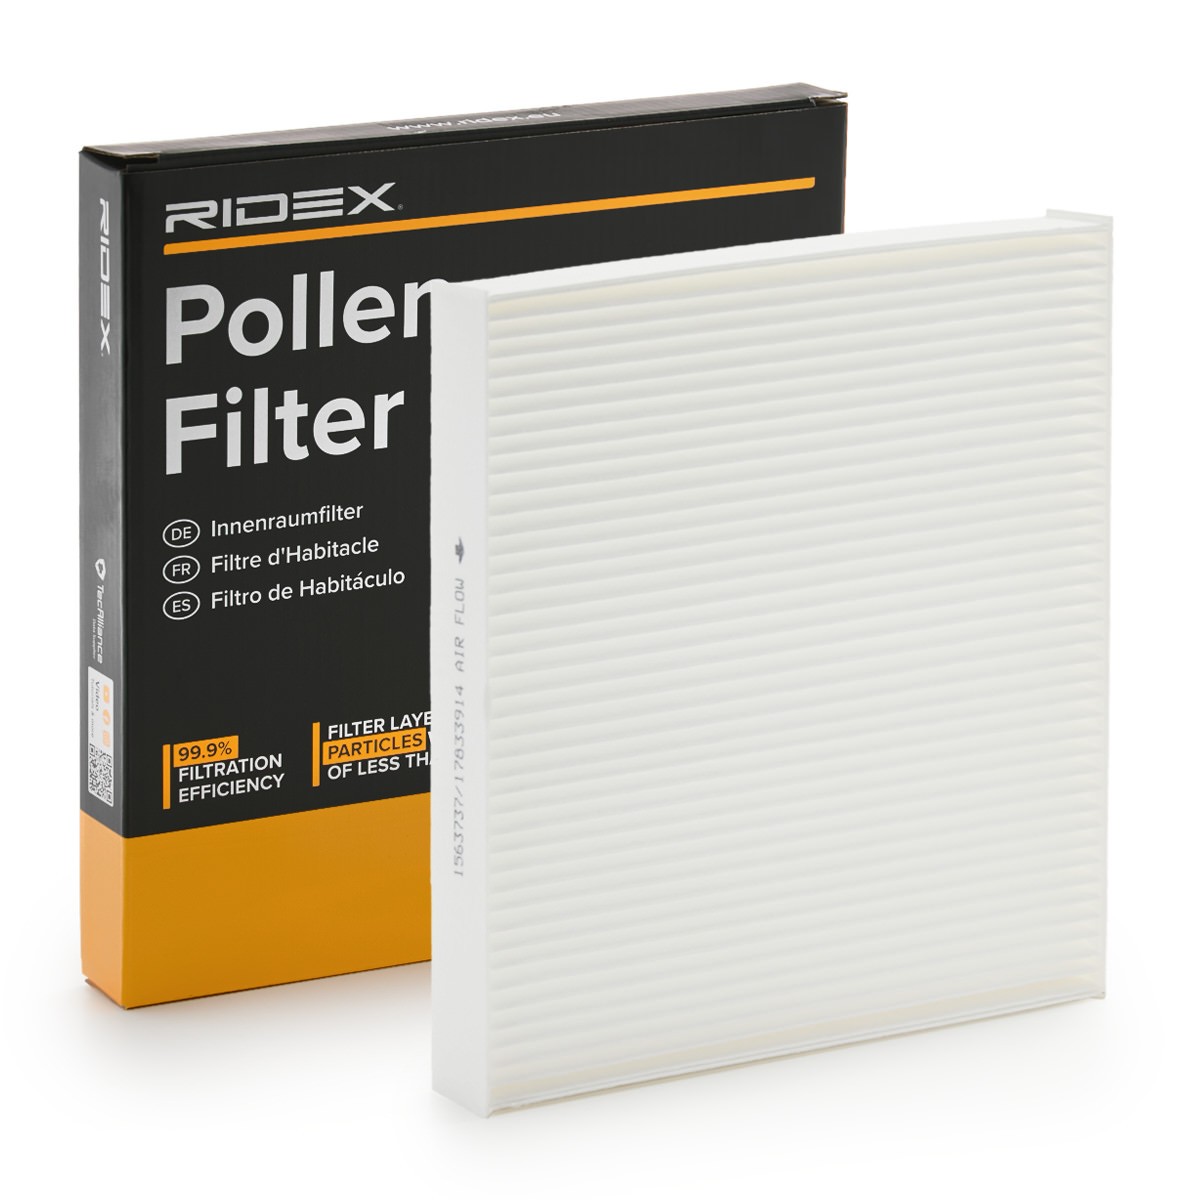 RIDEX 424I0738 Pollen filter Particulate Filter, 252 mm x 222 mm x 32 mm